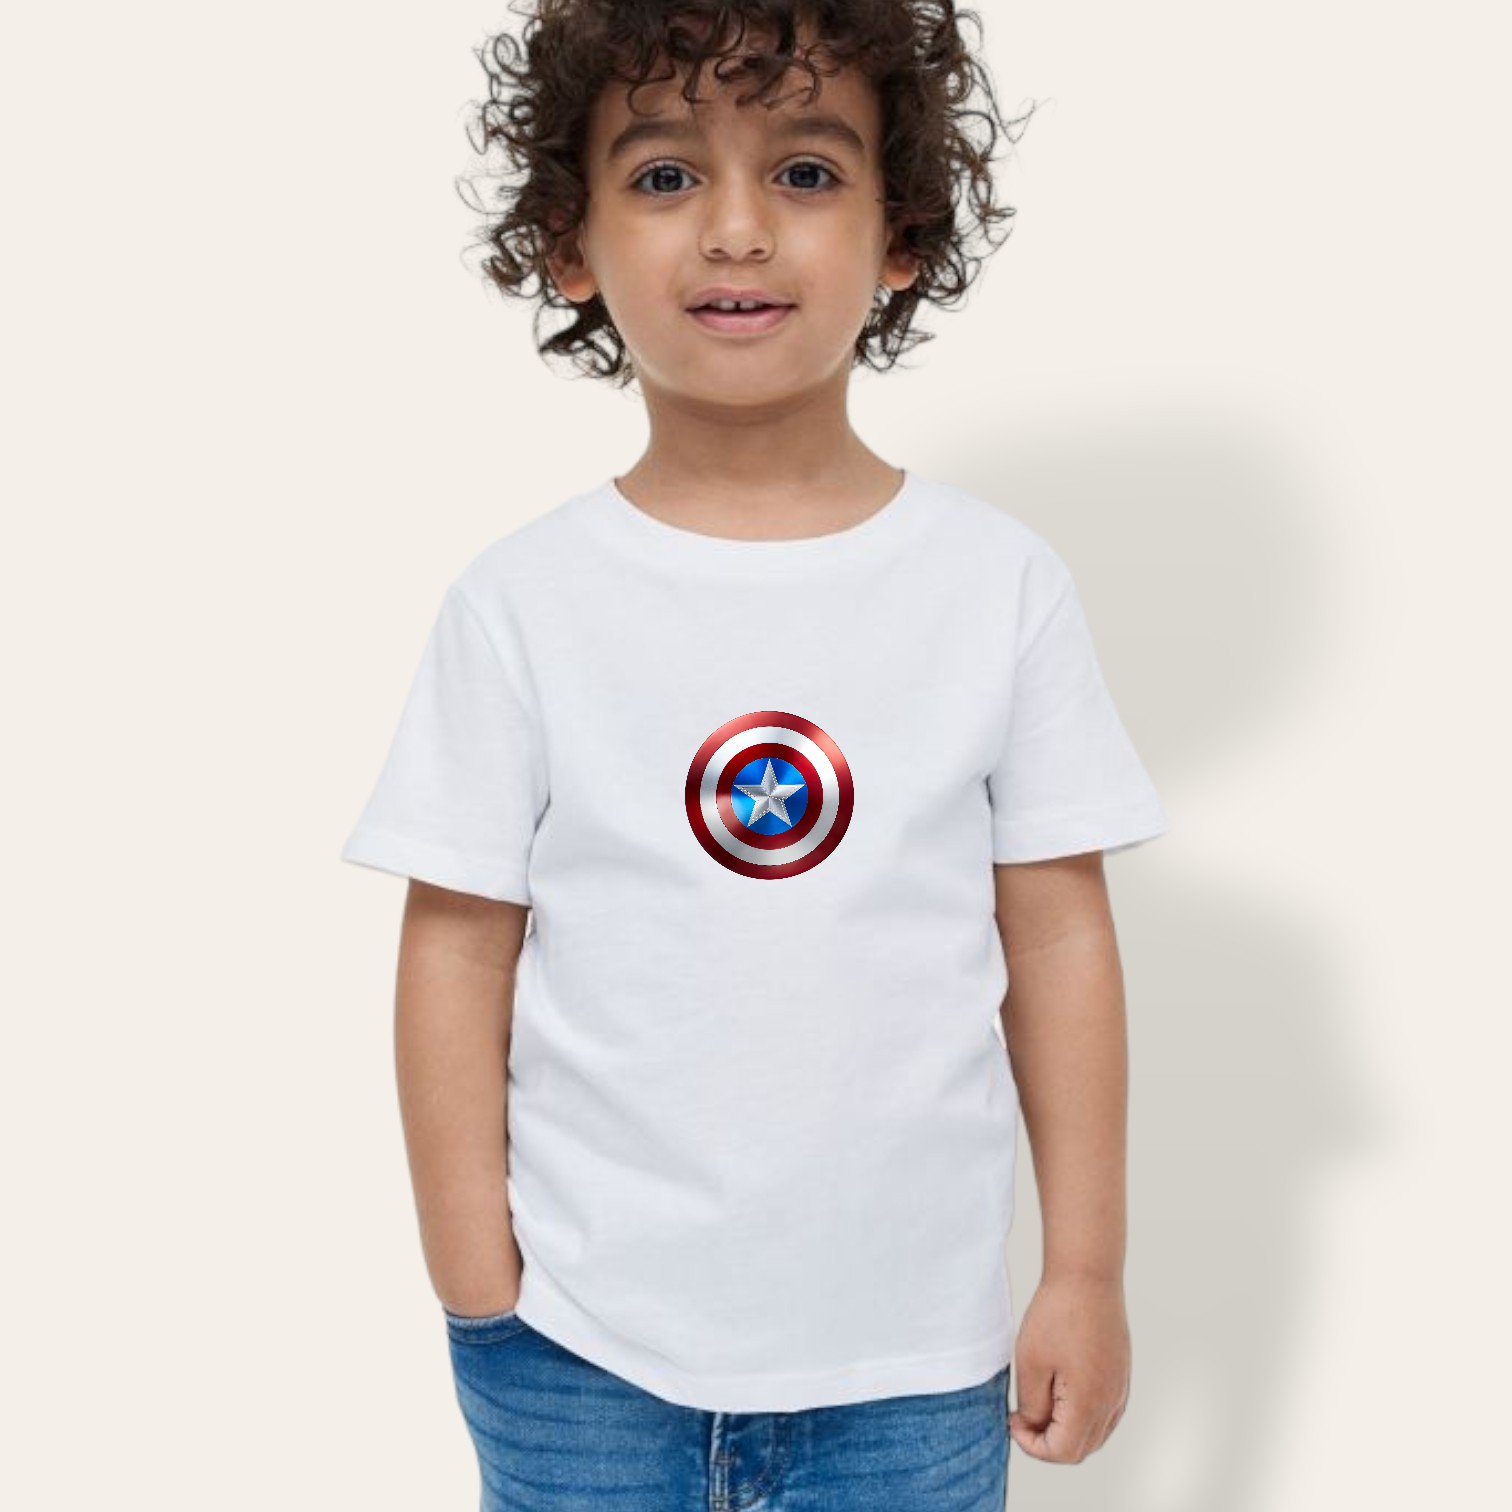 Camiseta Capitan america mini